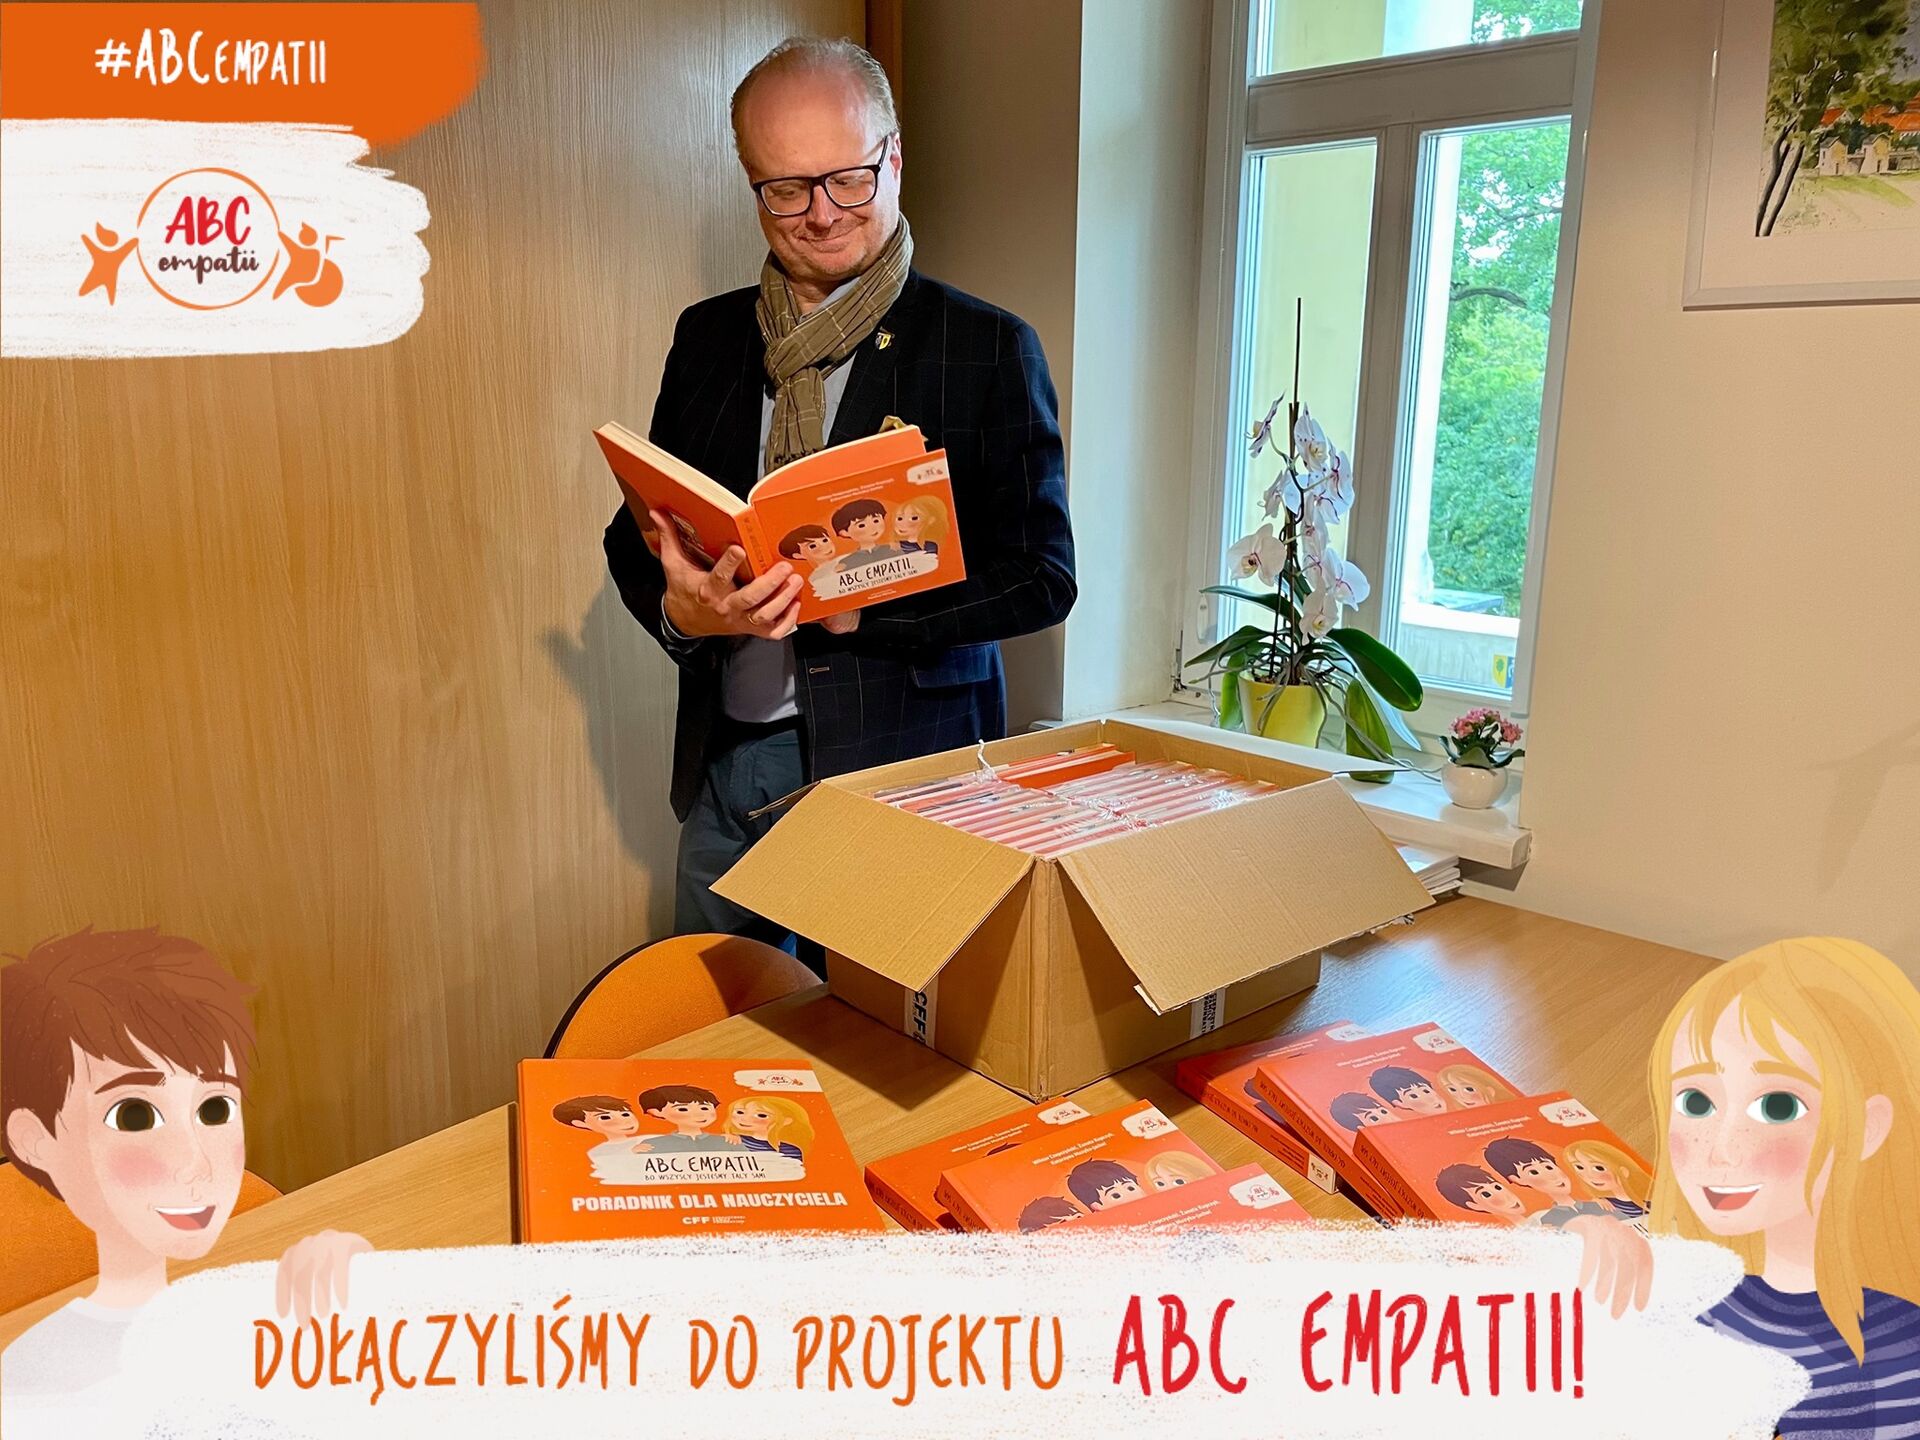 Burmistrz Piotr Remiszewski z książką "ABC Empatii"